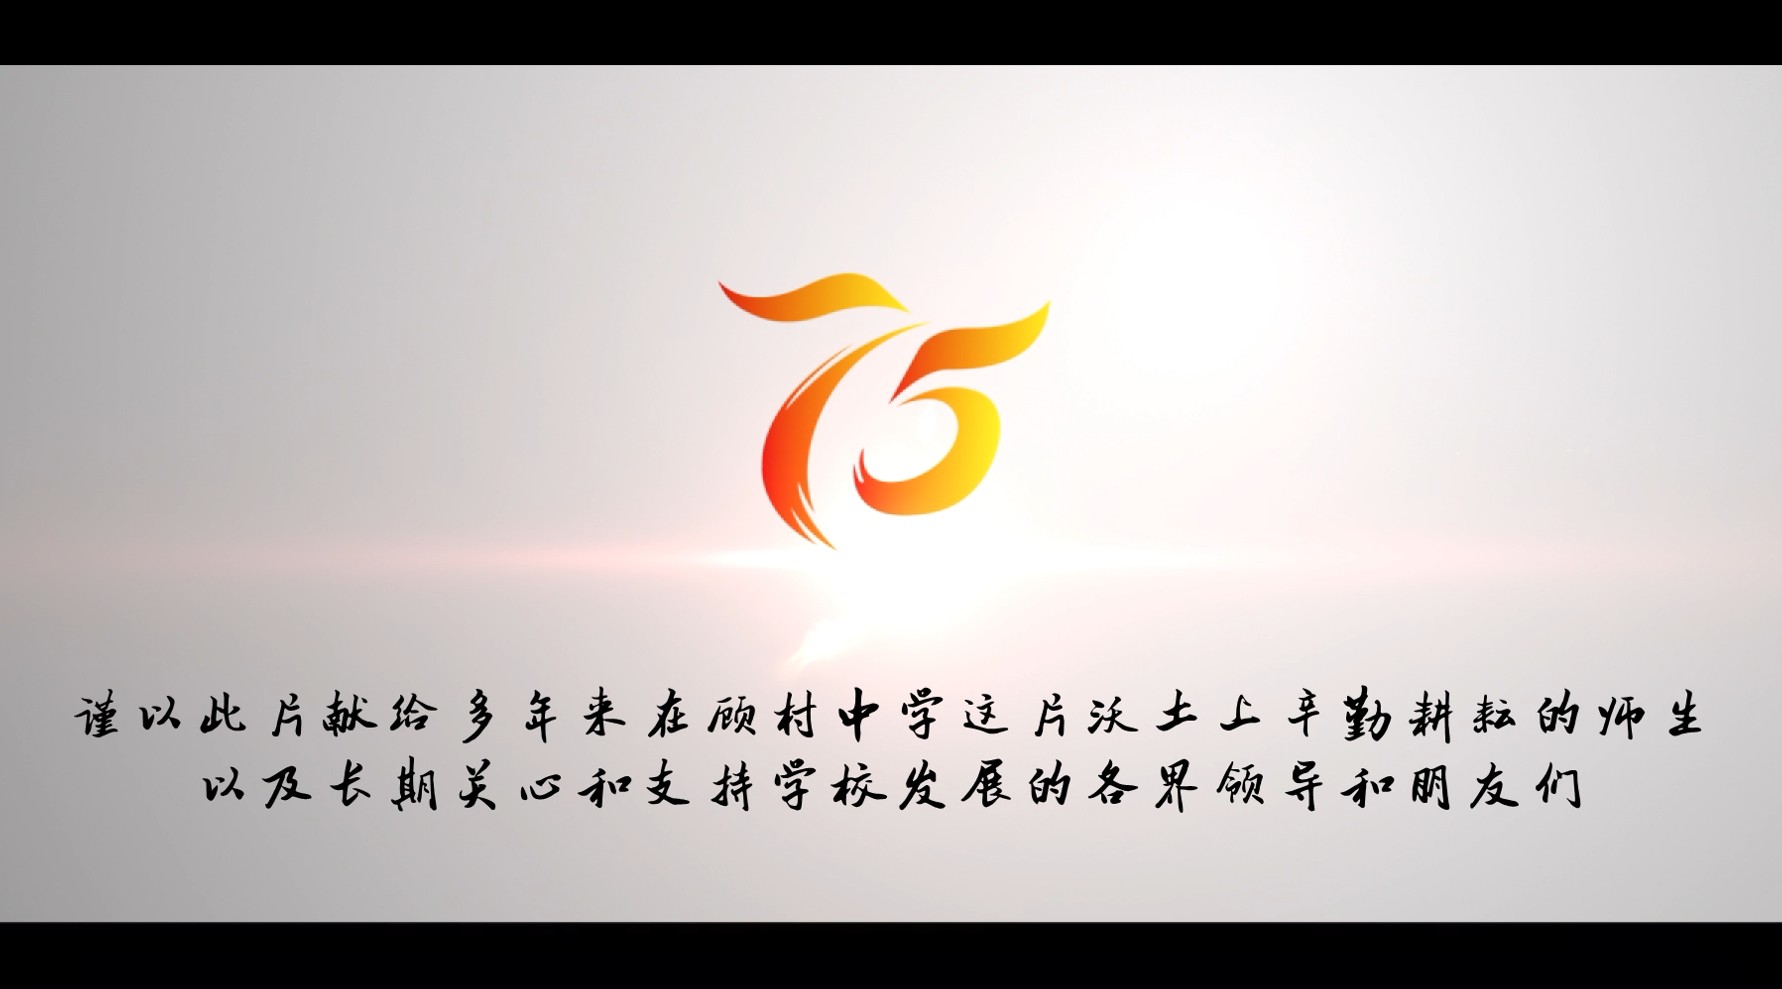 上海市顾村中学75周年校庆宣传片 